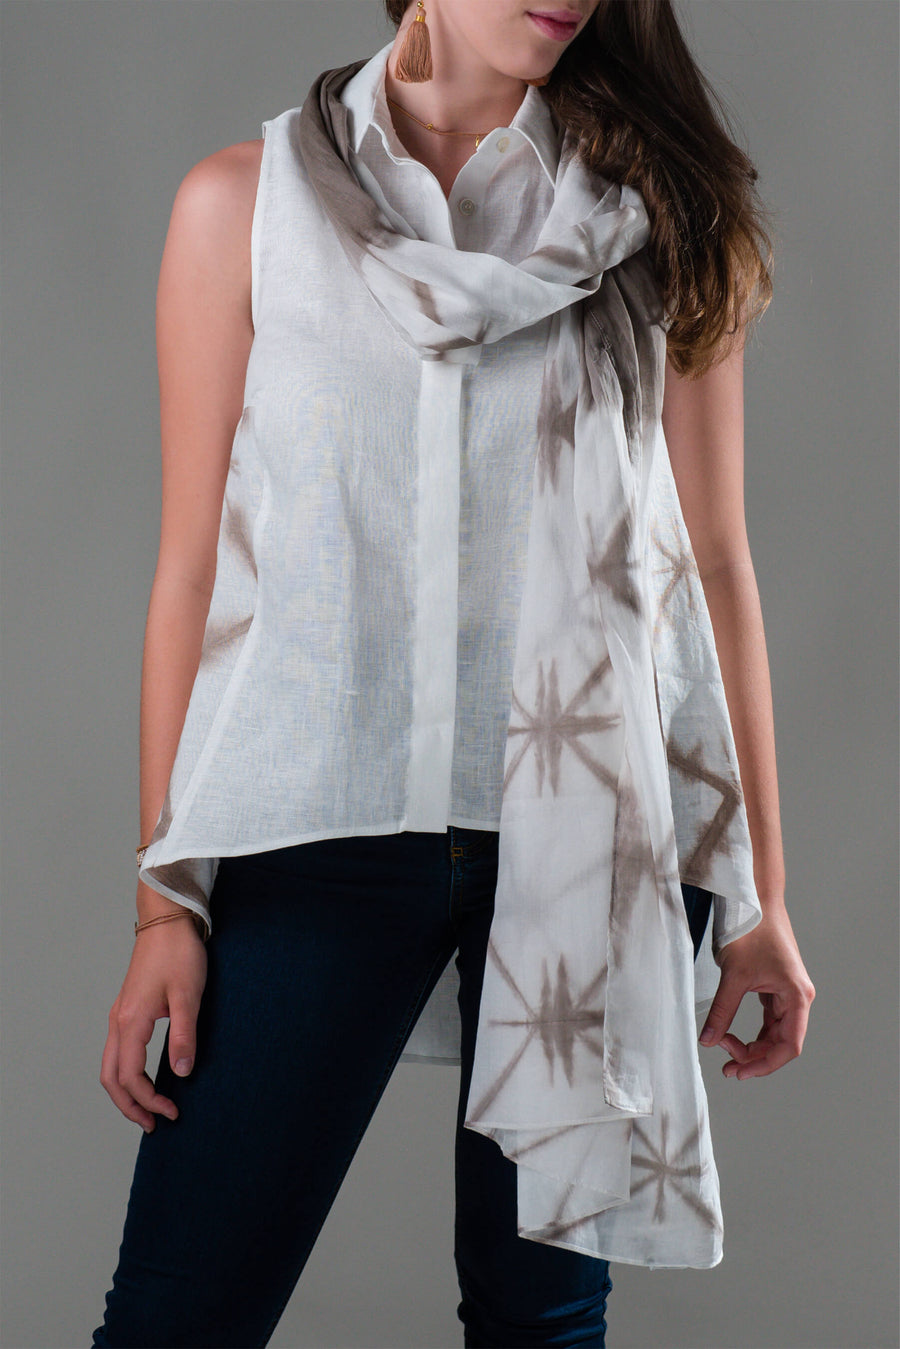 Bela lanena srajca s peščeno rjavim shibori tiskom in bel lanen šal sta del unikatne in brezčasne kolekcije Ta'Shi